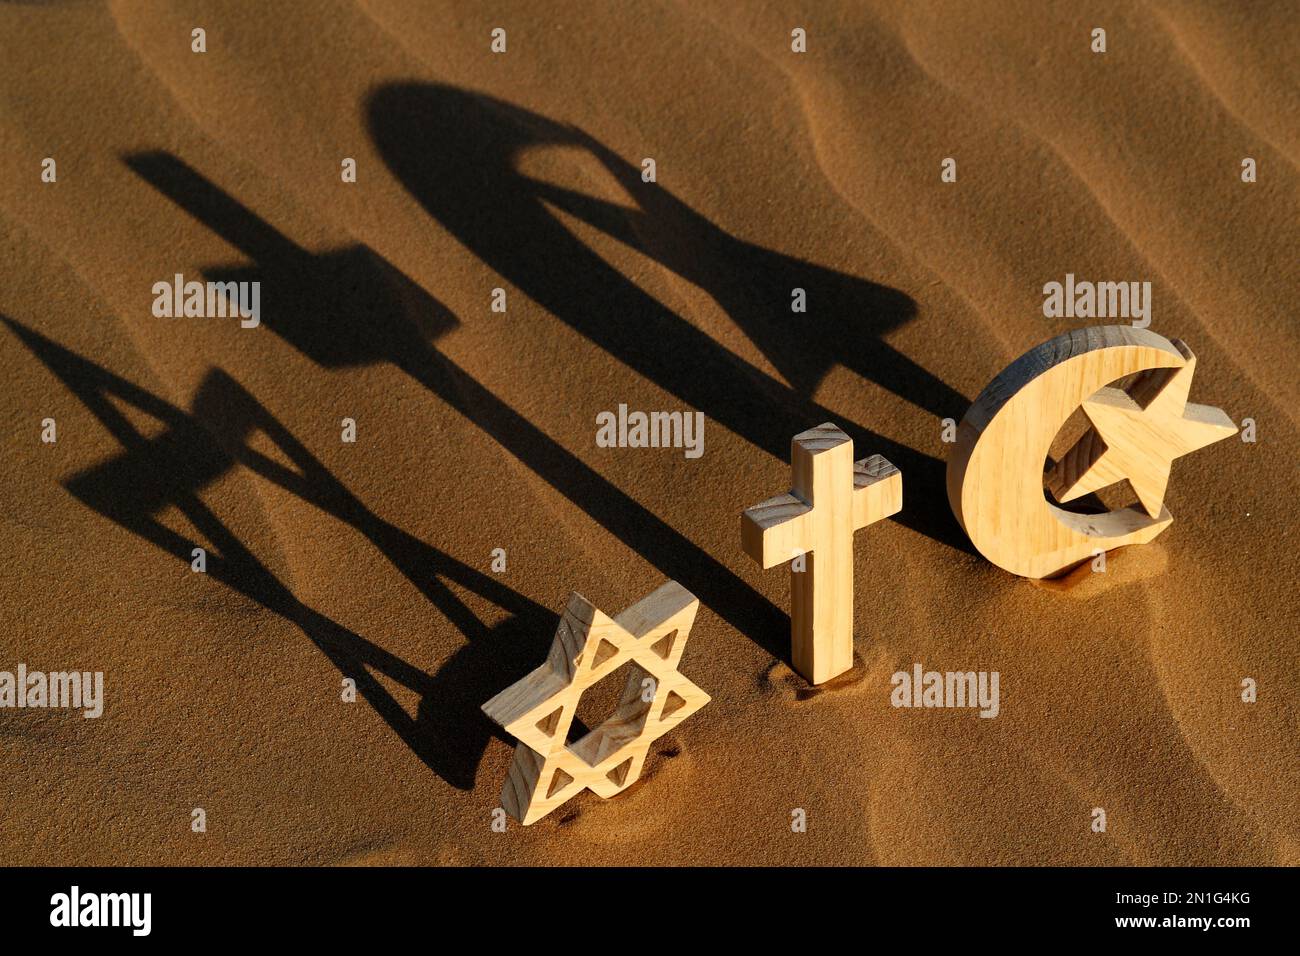 Simboli religiosi del cattolicesimo, Islam, Ebraismo, concetto di spiritualità interreligiosa, Emirati Arabi Uniti, Medio Oriente Foto Stock